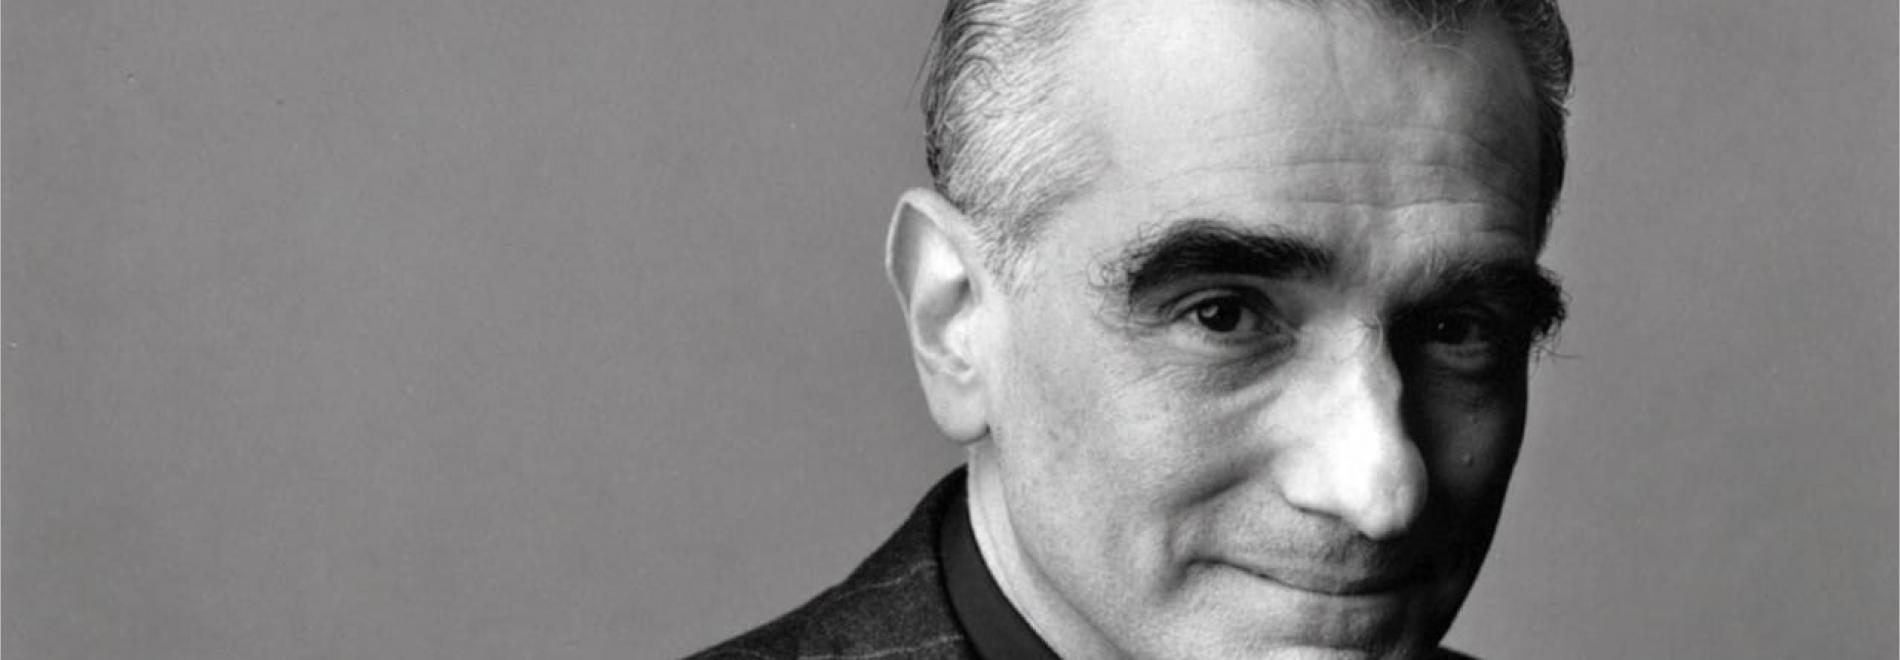 A Personal Journey with Martin Scorsese Through American Movies Un viatge personal amb Martin Scorsese a través del cinema americà